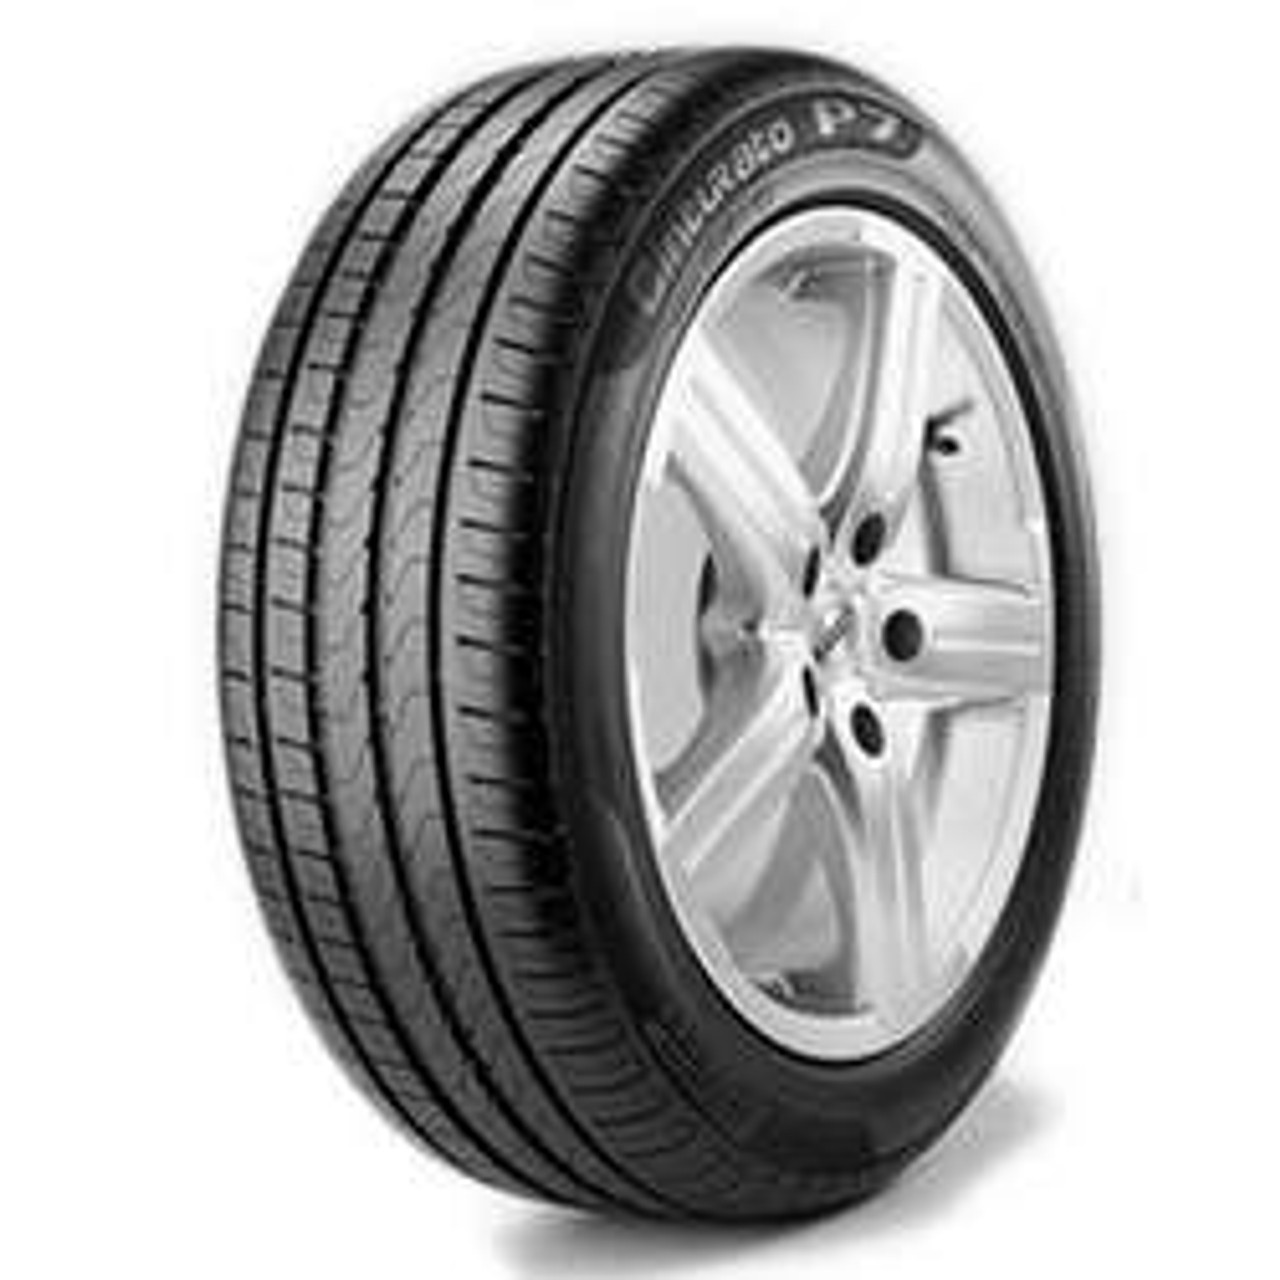 Pirelli Cinturato P7 205/55R16 Tires | 2328900 | 205 55 16 Tire